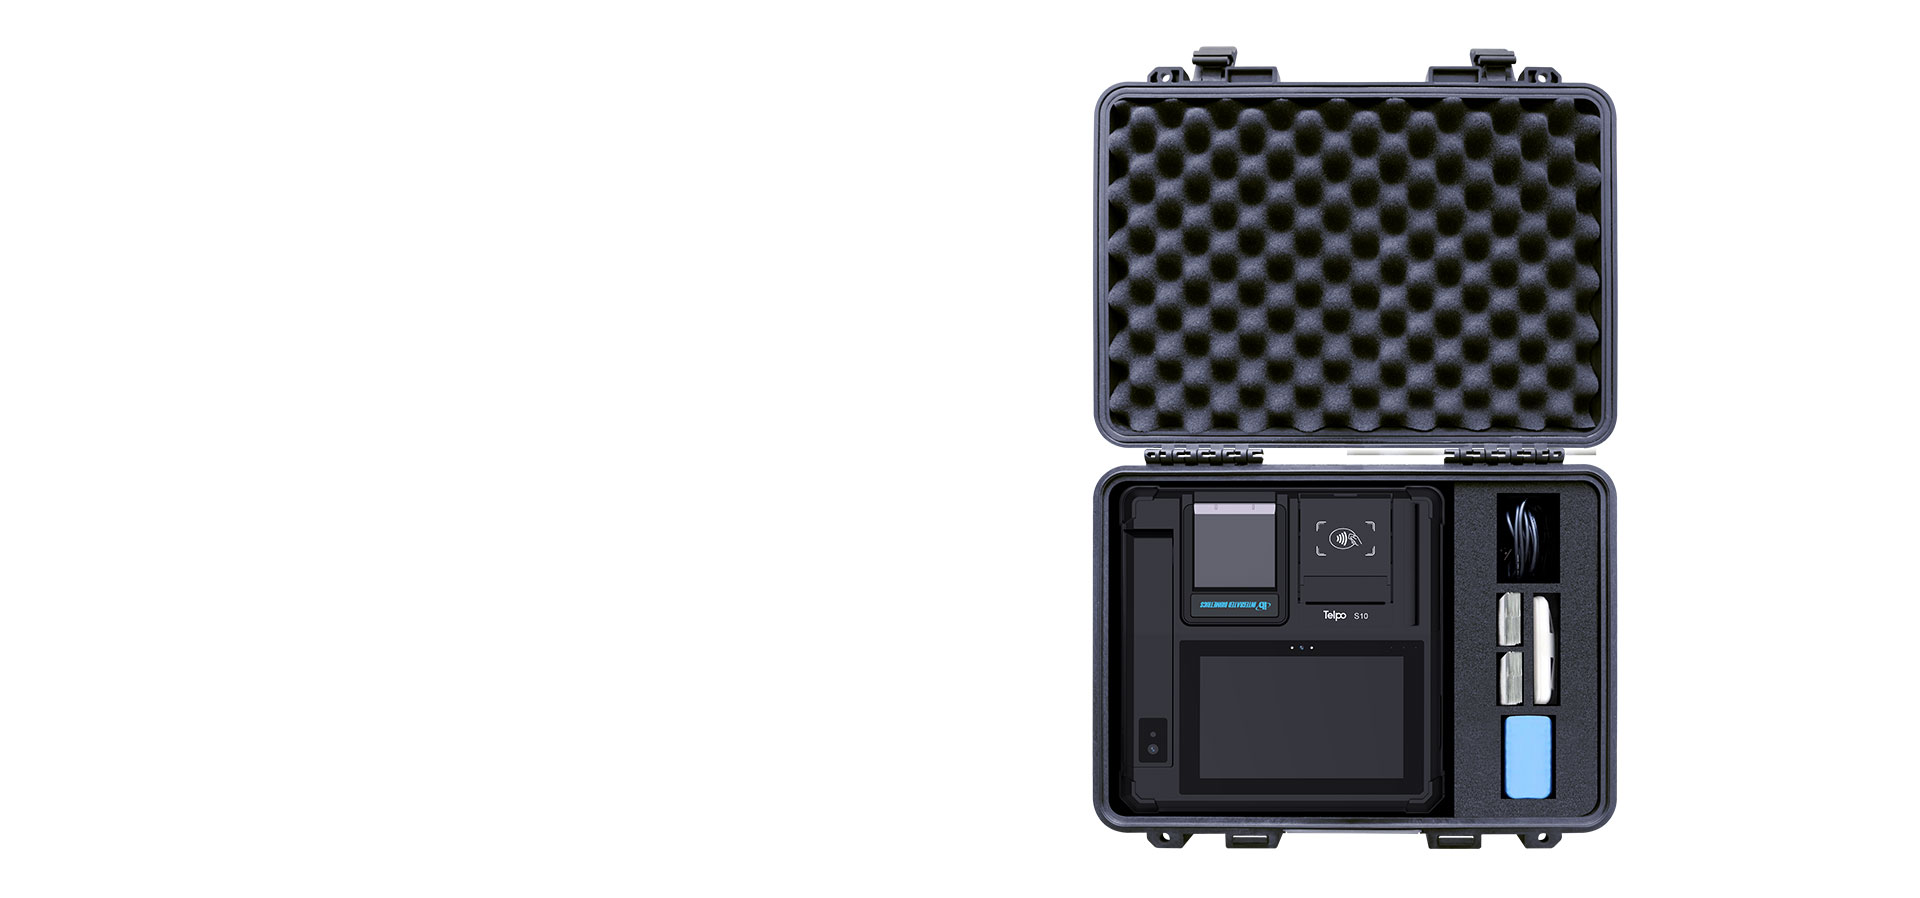 NIN enrolment kit Fingerprint scanner device Telpo S10